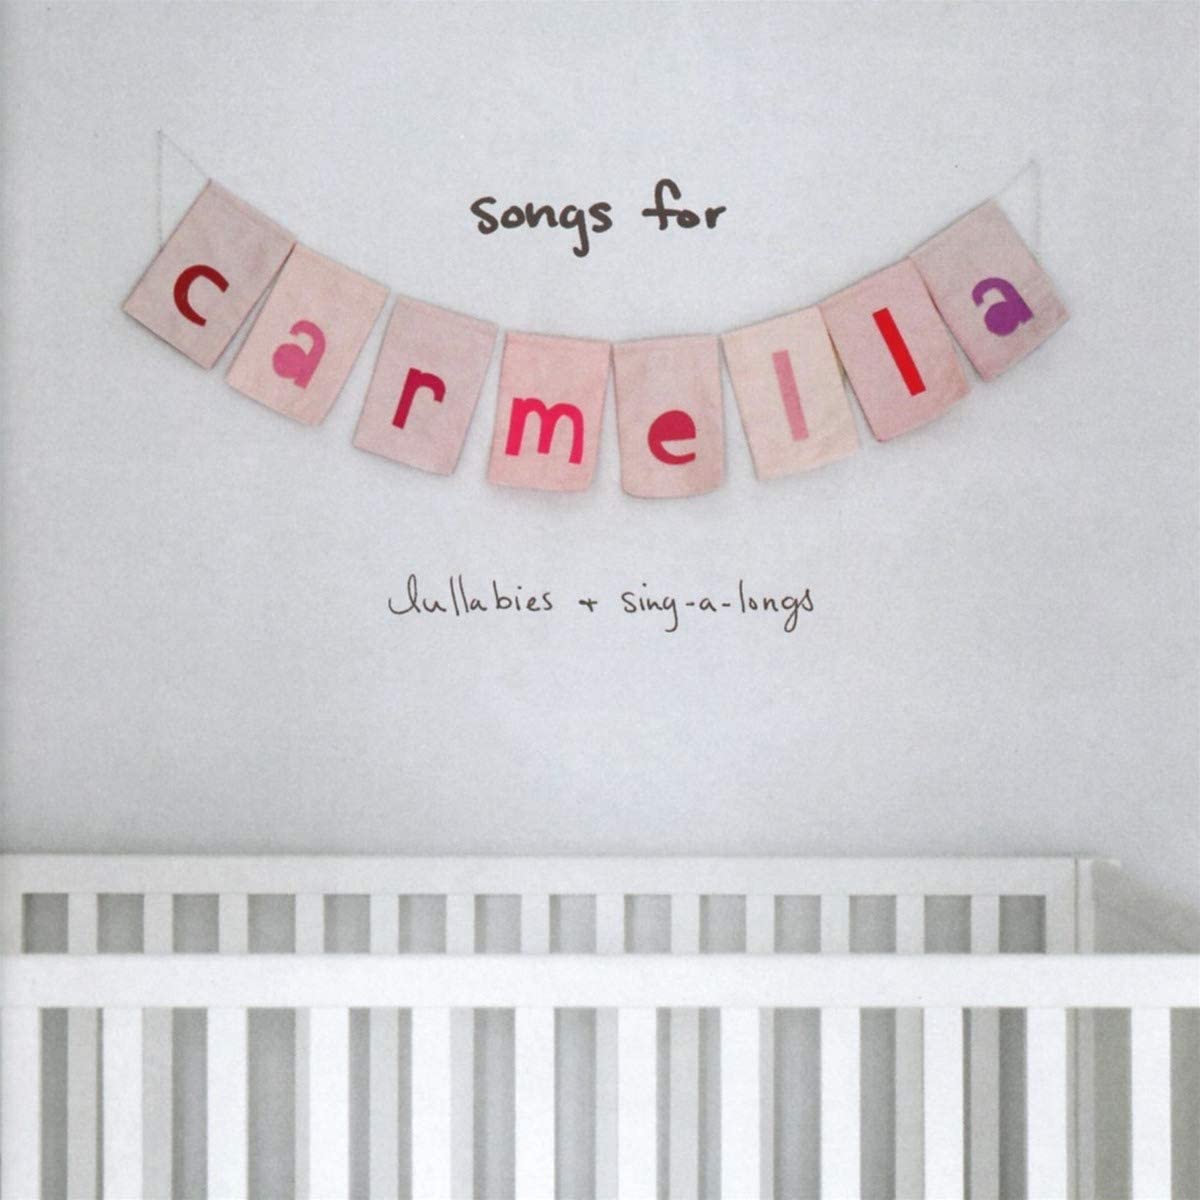 Perri, Christina/Songs For Carmella Lullabies [CD]